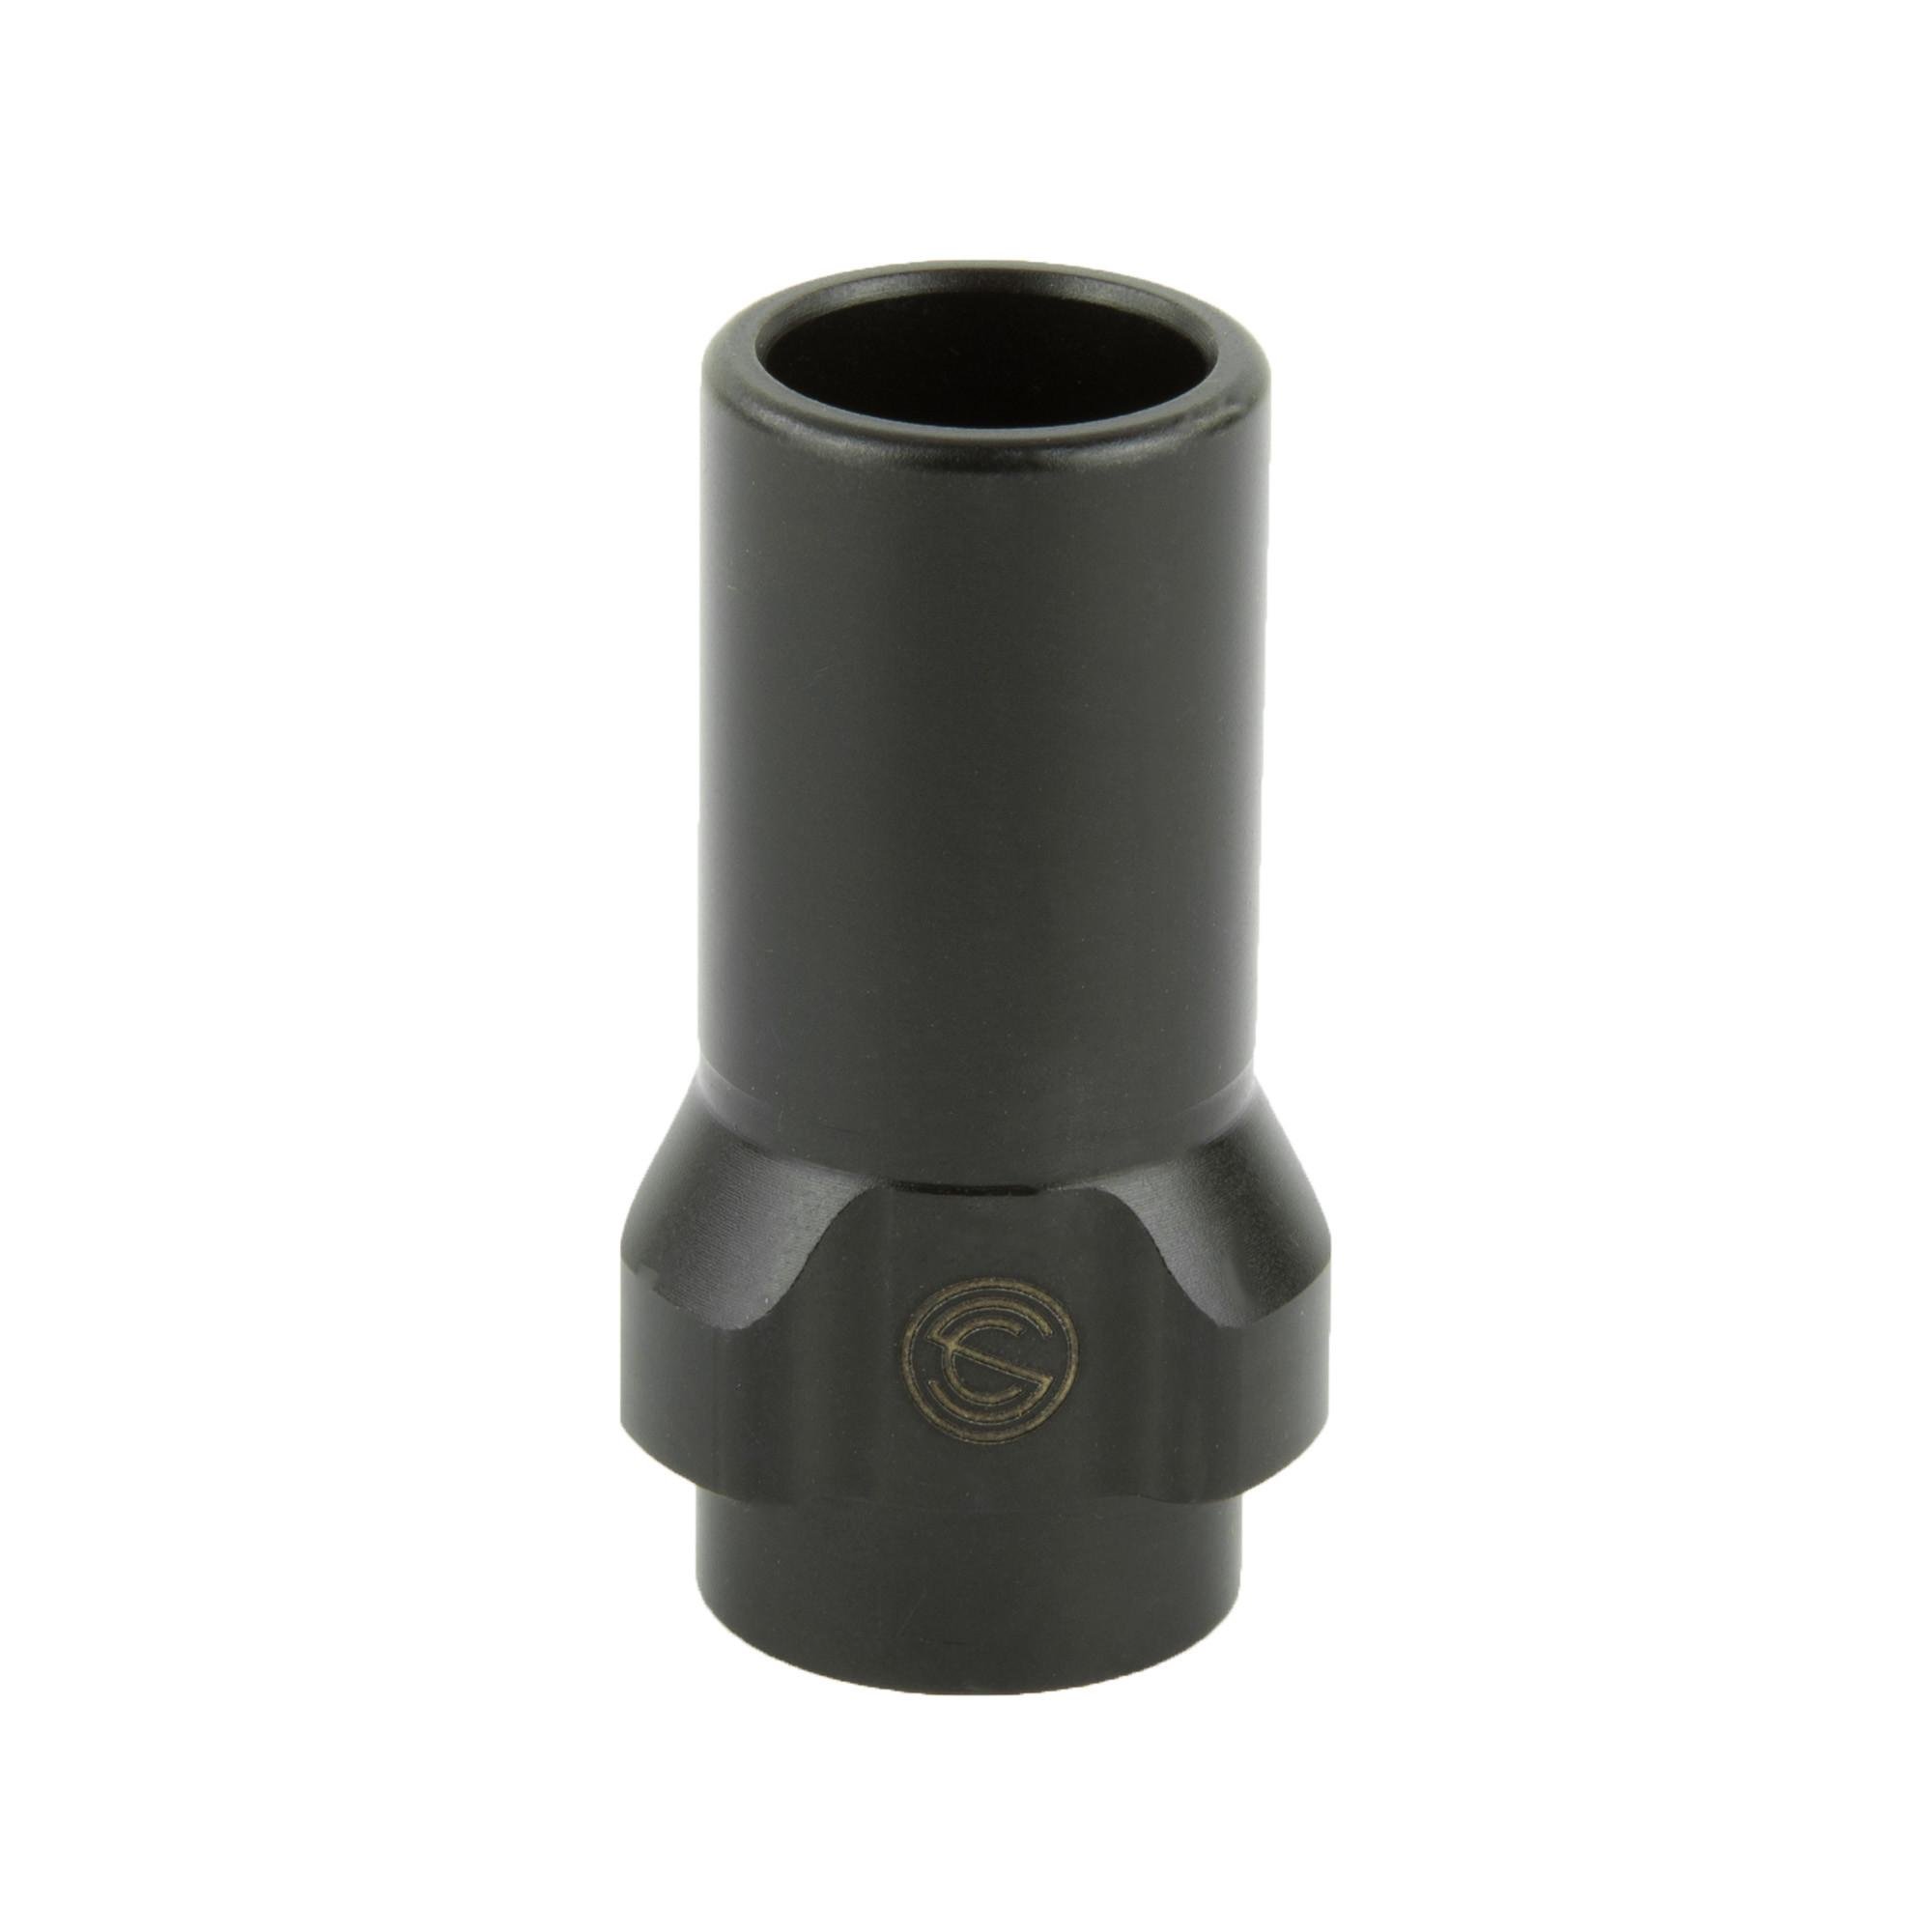 Silencerco 3 Lug Muzzle Dev 9mm 1/2x28